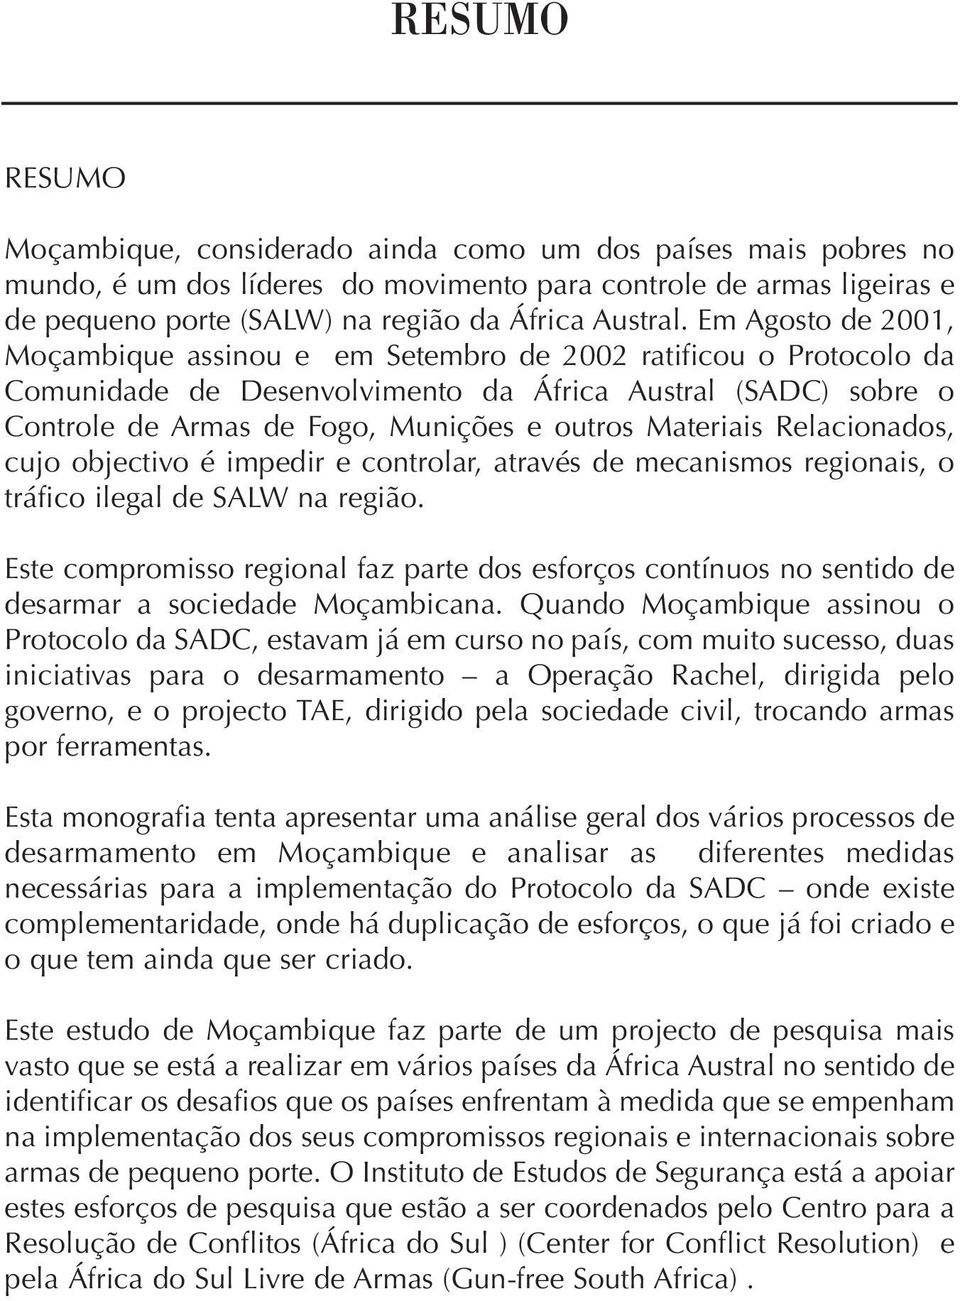 Em Agosto de 2001, Moçambique assinou e em Setembro de 2002 ratificou o Protocolo da Comunidade de Desenvolvimento da África Austral (SADC) sobre o Controle de Armas de Fogo, Munições e outros